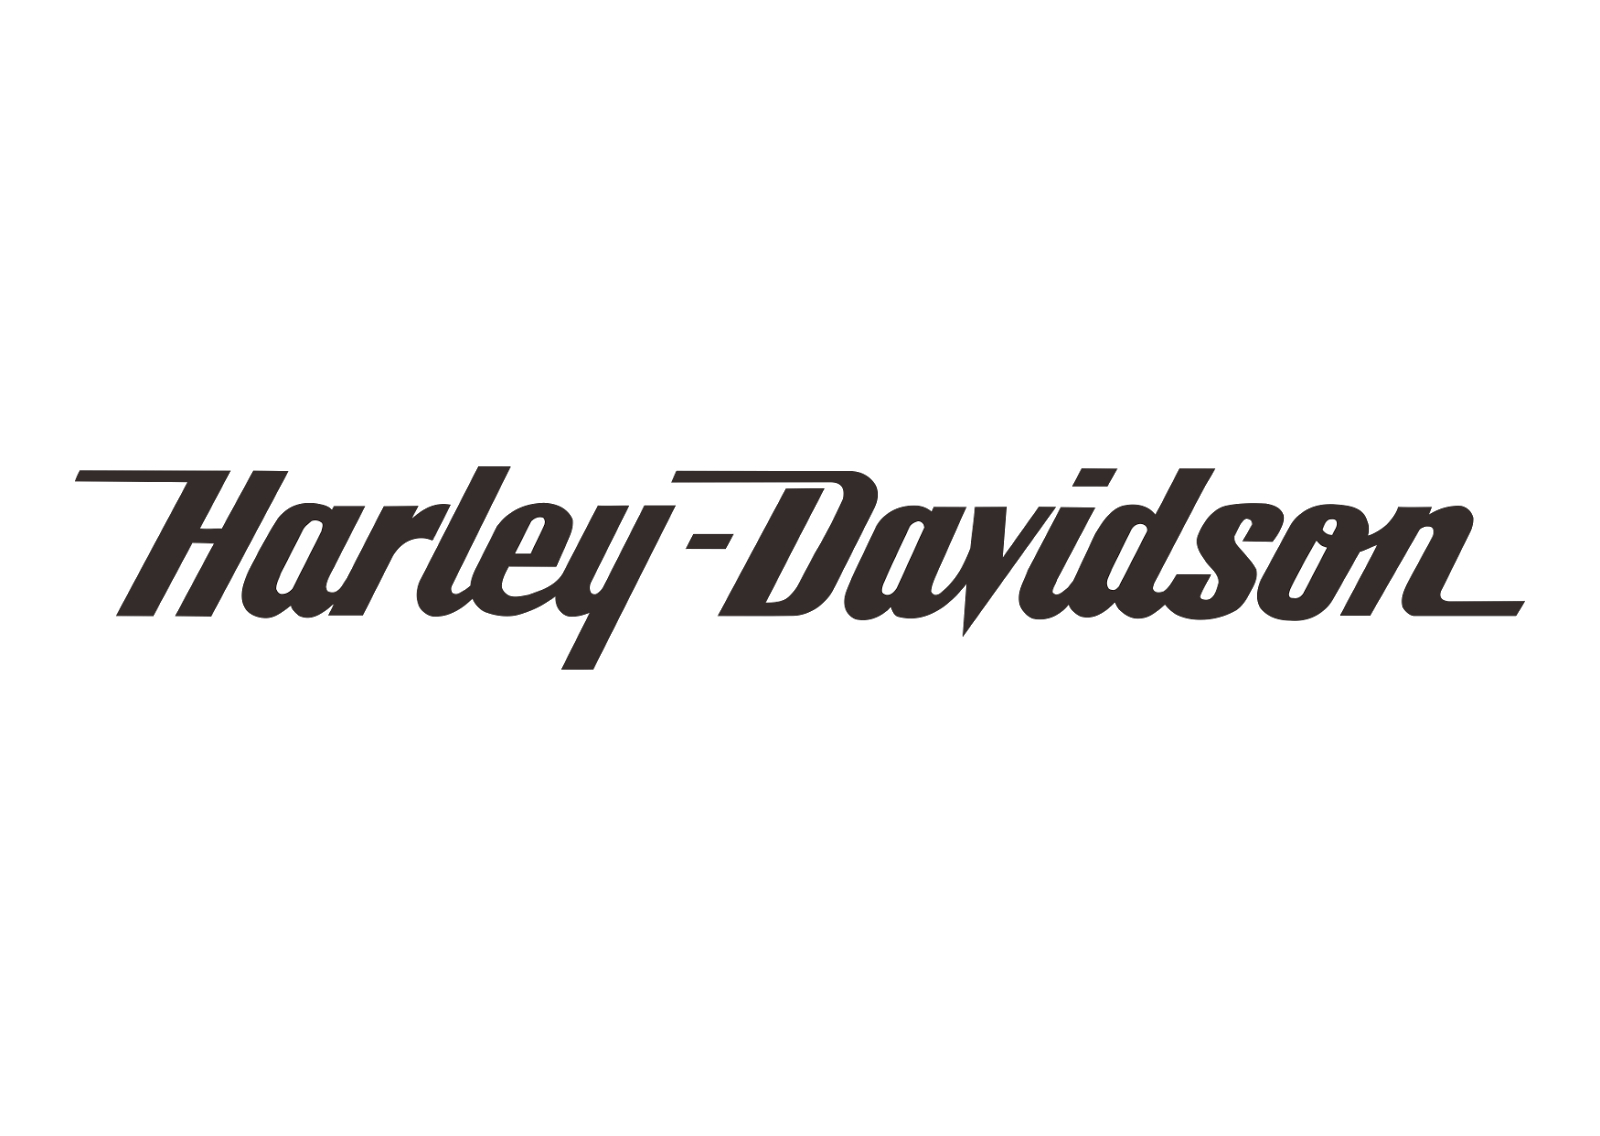 Black and White Harley-Davidson Logo - Harley Davidson Png Logo - Free Transparent PNG Logos